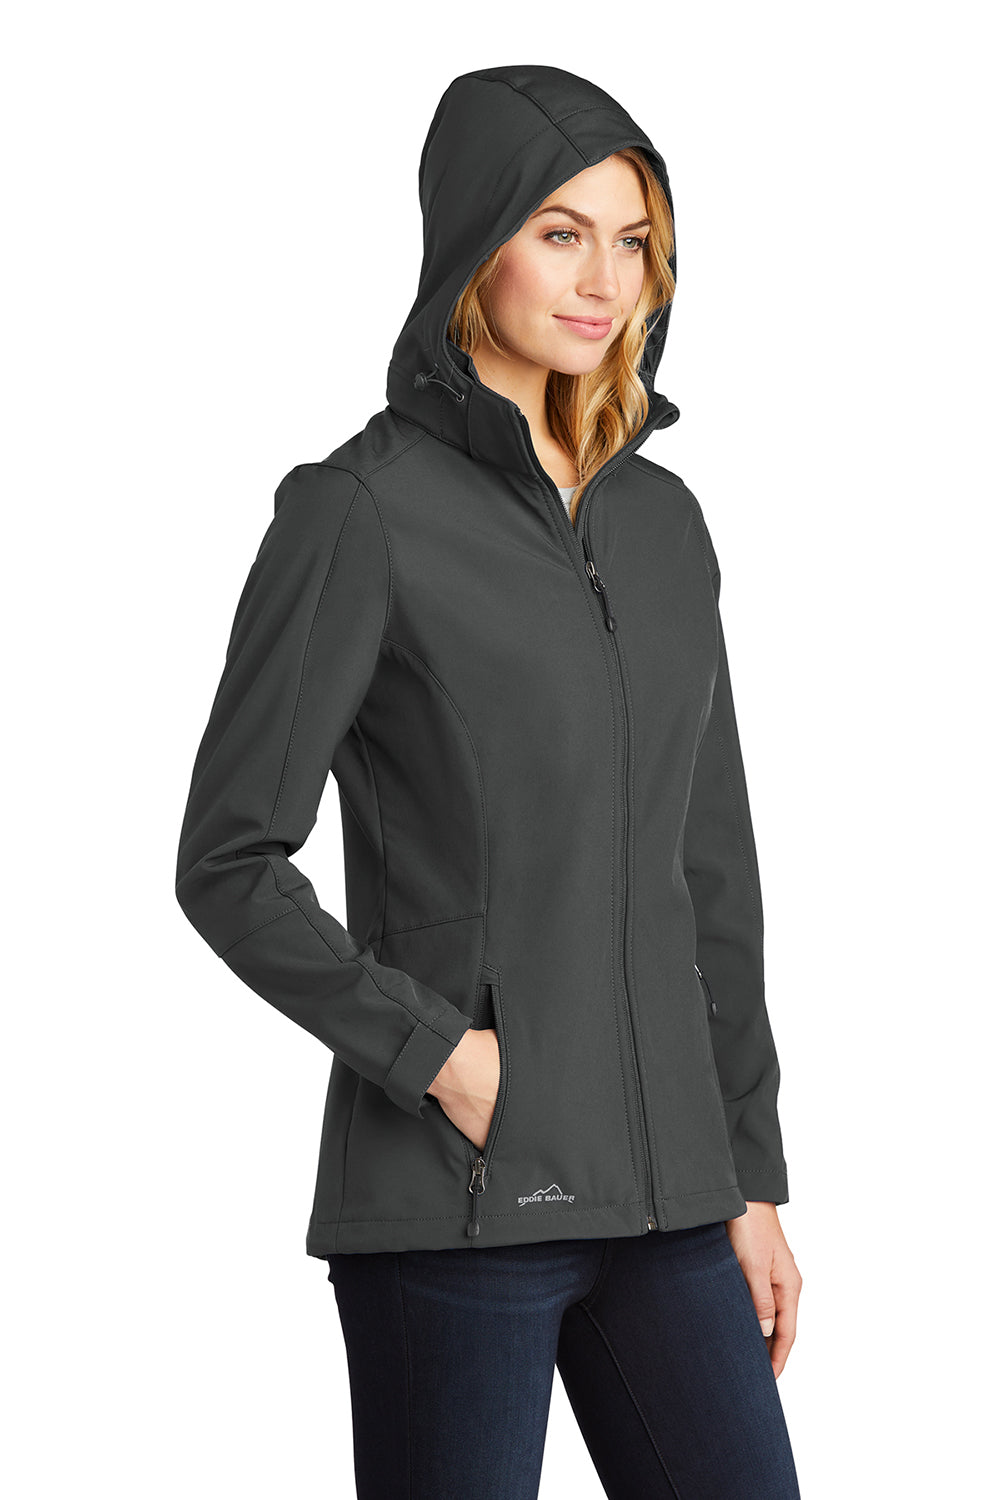 Eddie Bauer EB537 Womens Water Resistant Full Zip Hooded Jacket Steel Grey Model 3Q